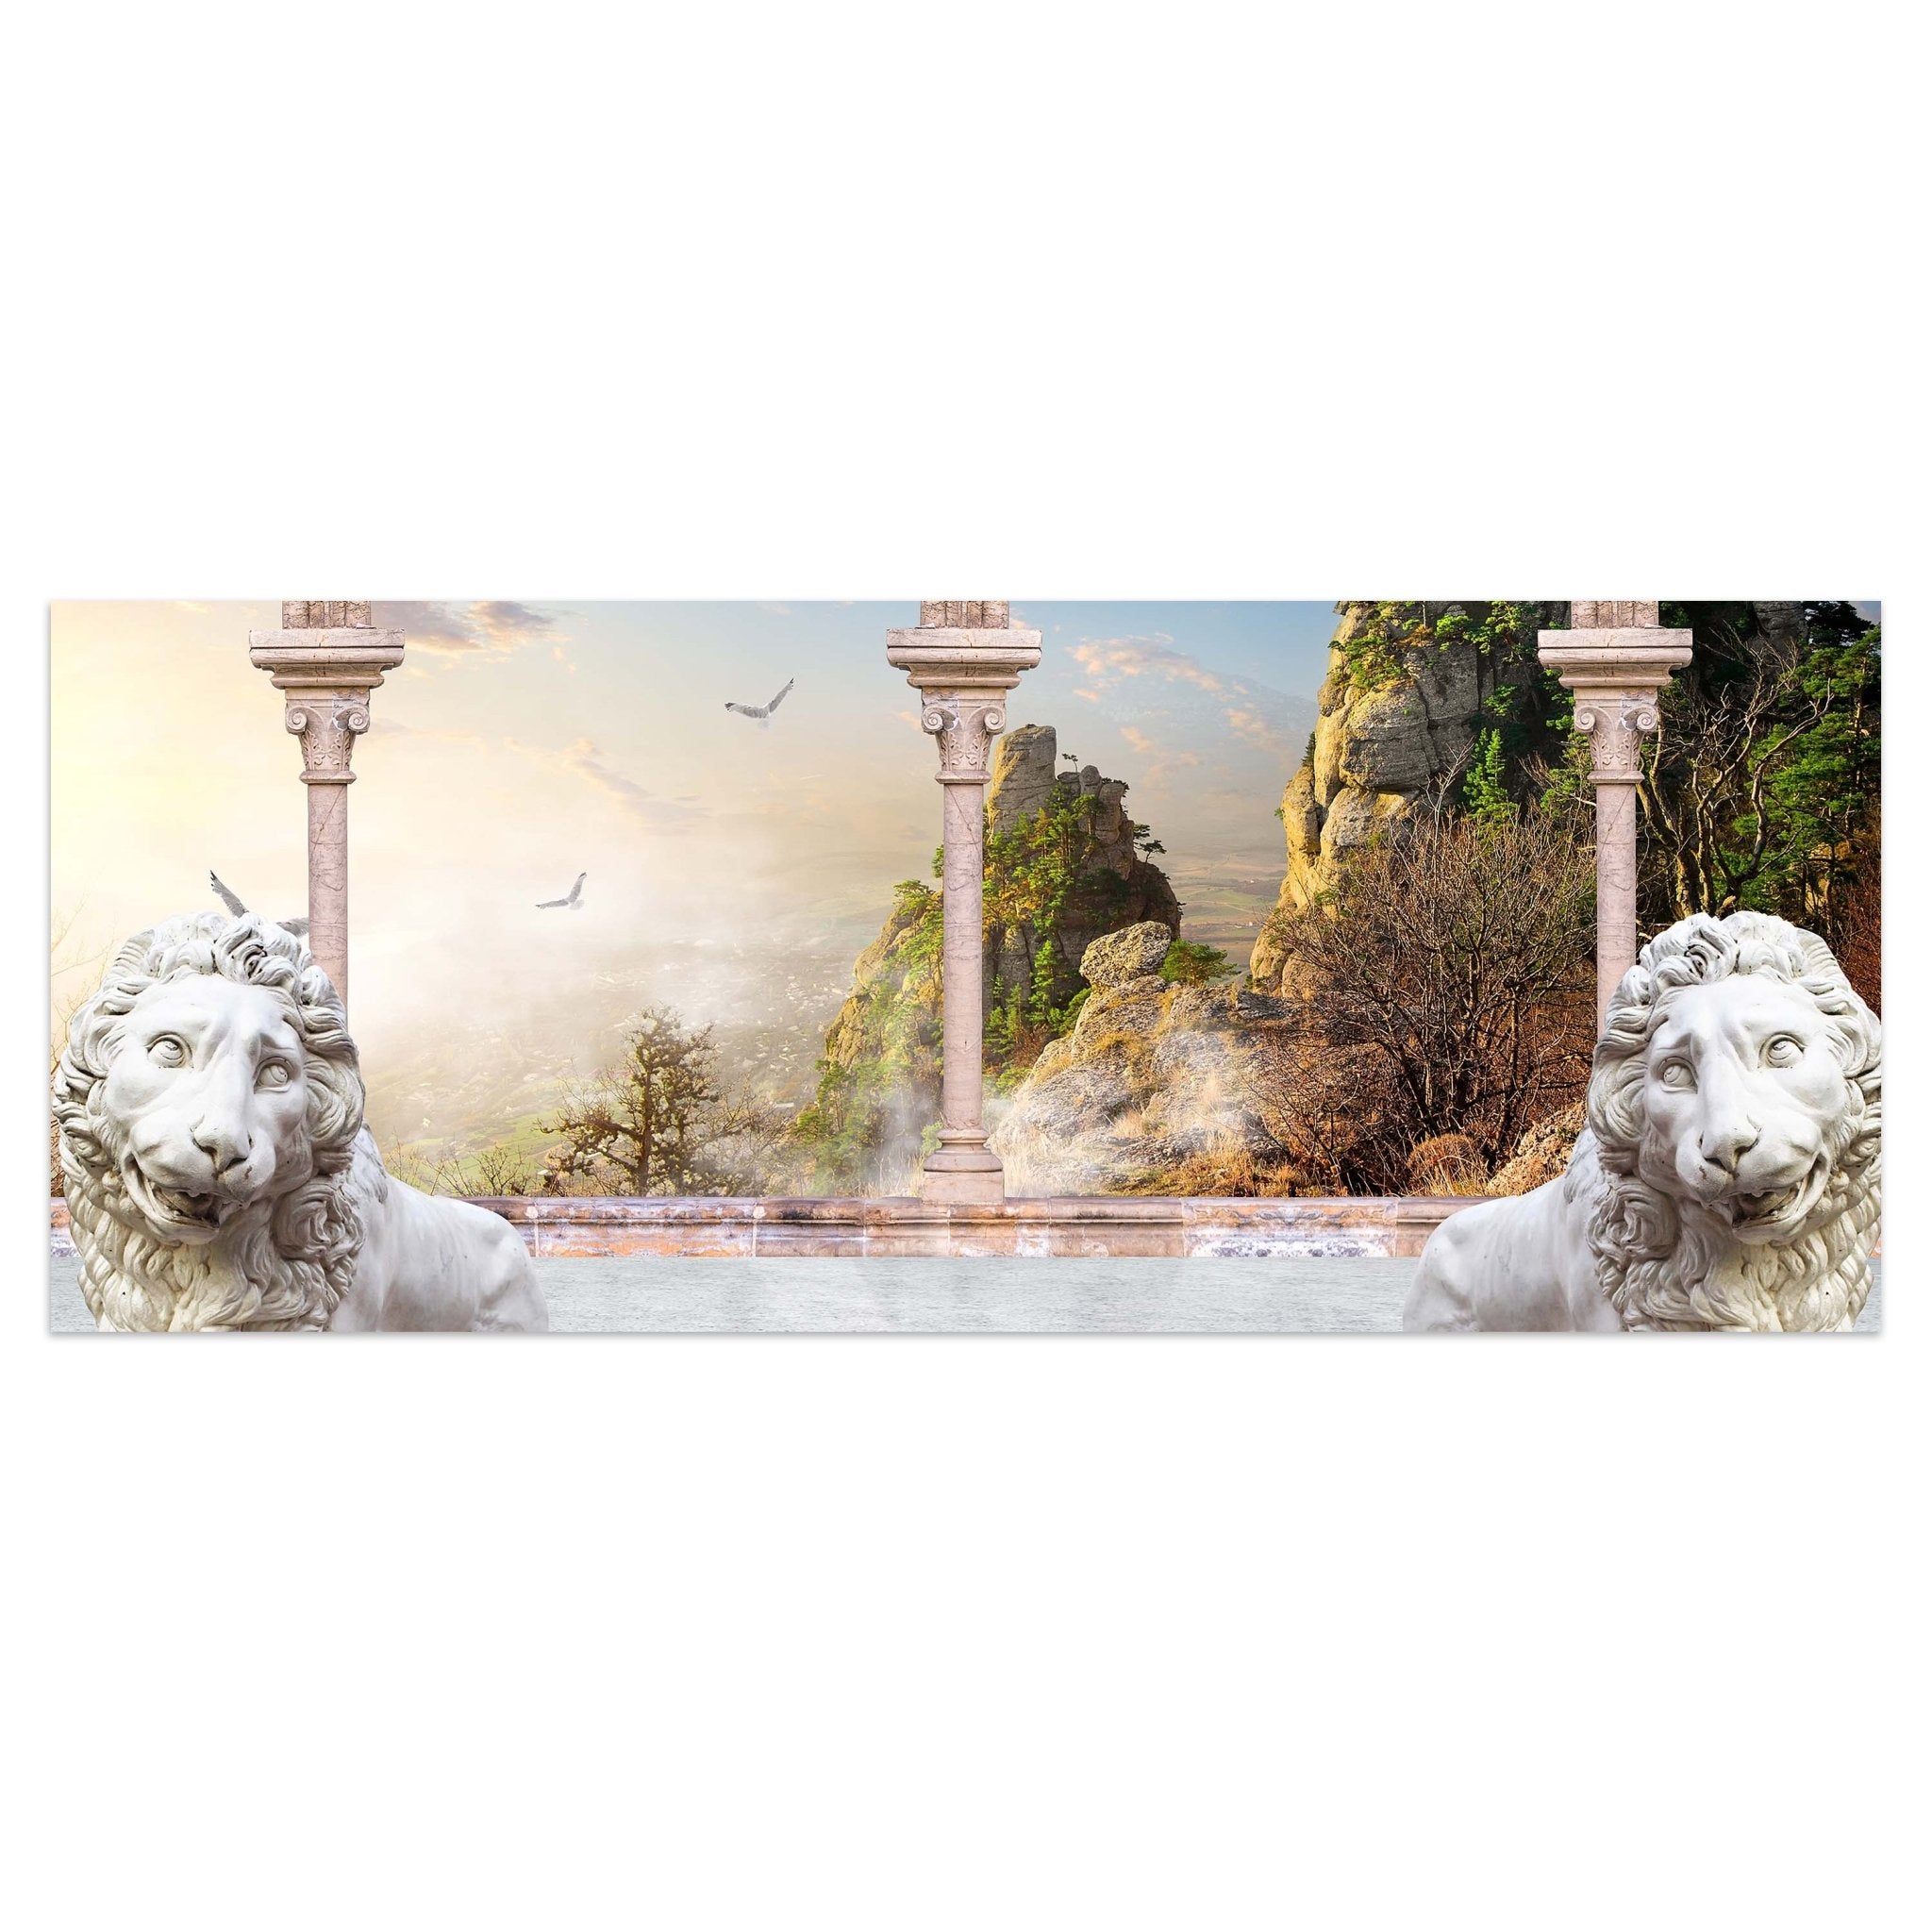 Leinwandbild Spalten mit Löwen M0578 kaufen - Bild 1